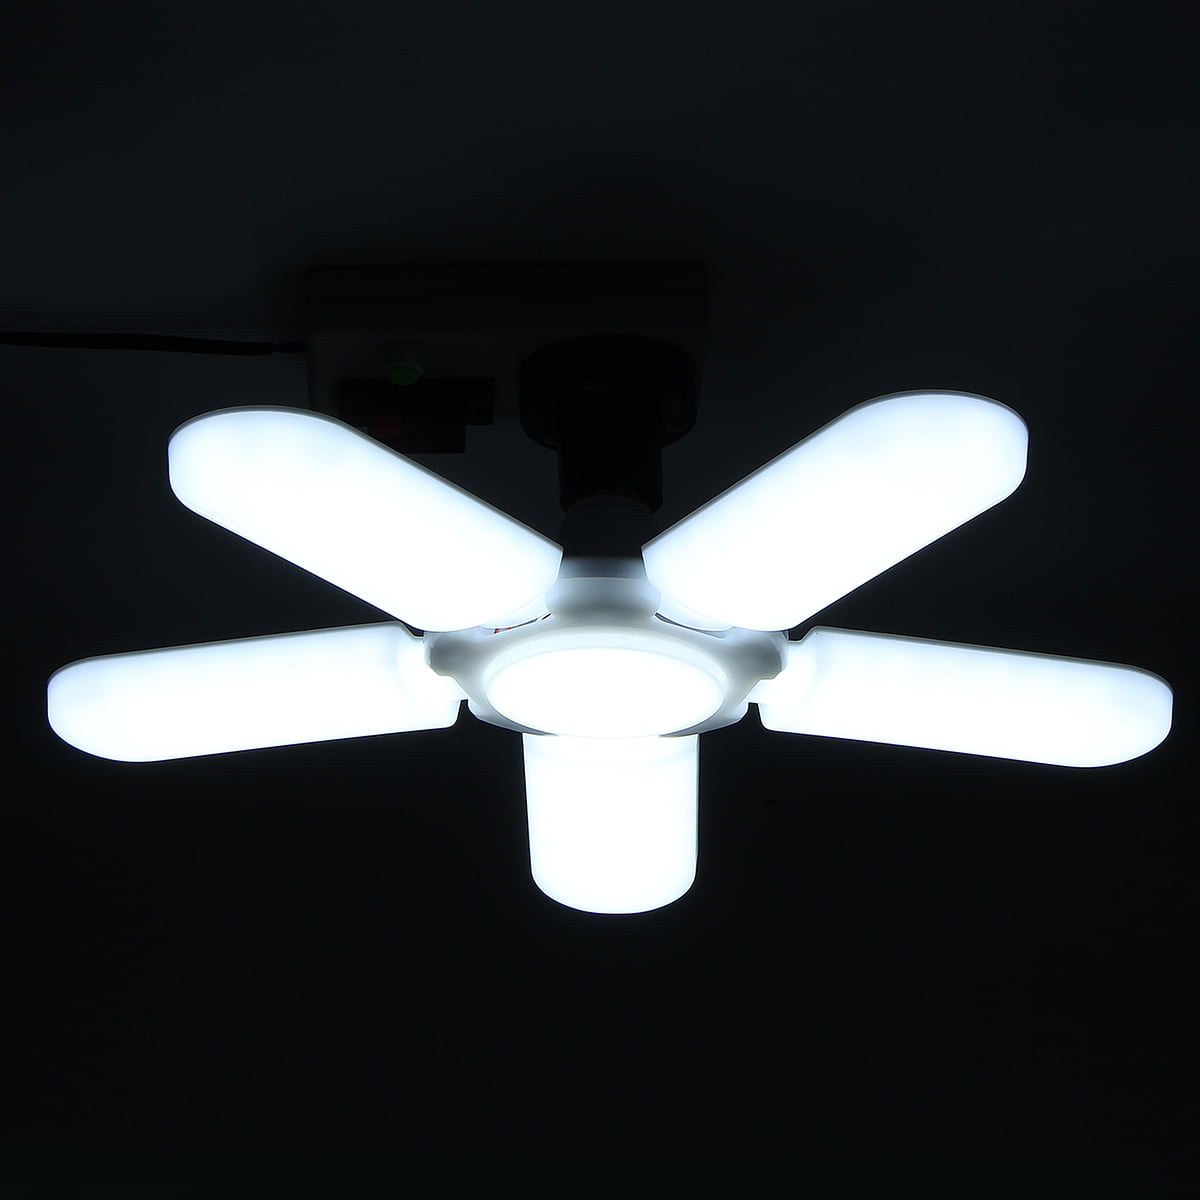 Loski AC 95-265V Foldable Fan Blade Bulb E27 2/3/4/5 Fans Ceiling Garage Lights Lighting Angle Adjustable LEDs Light for Indoor Home Decor 